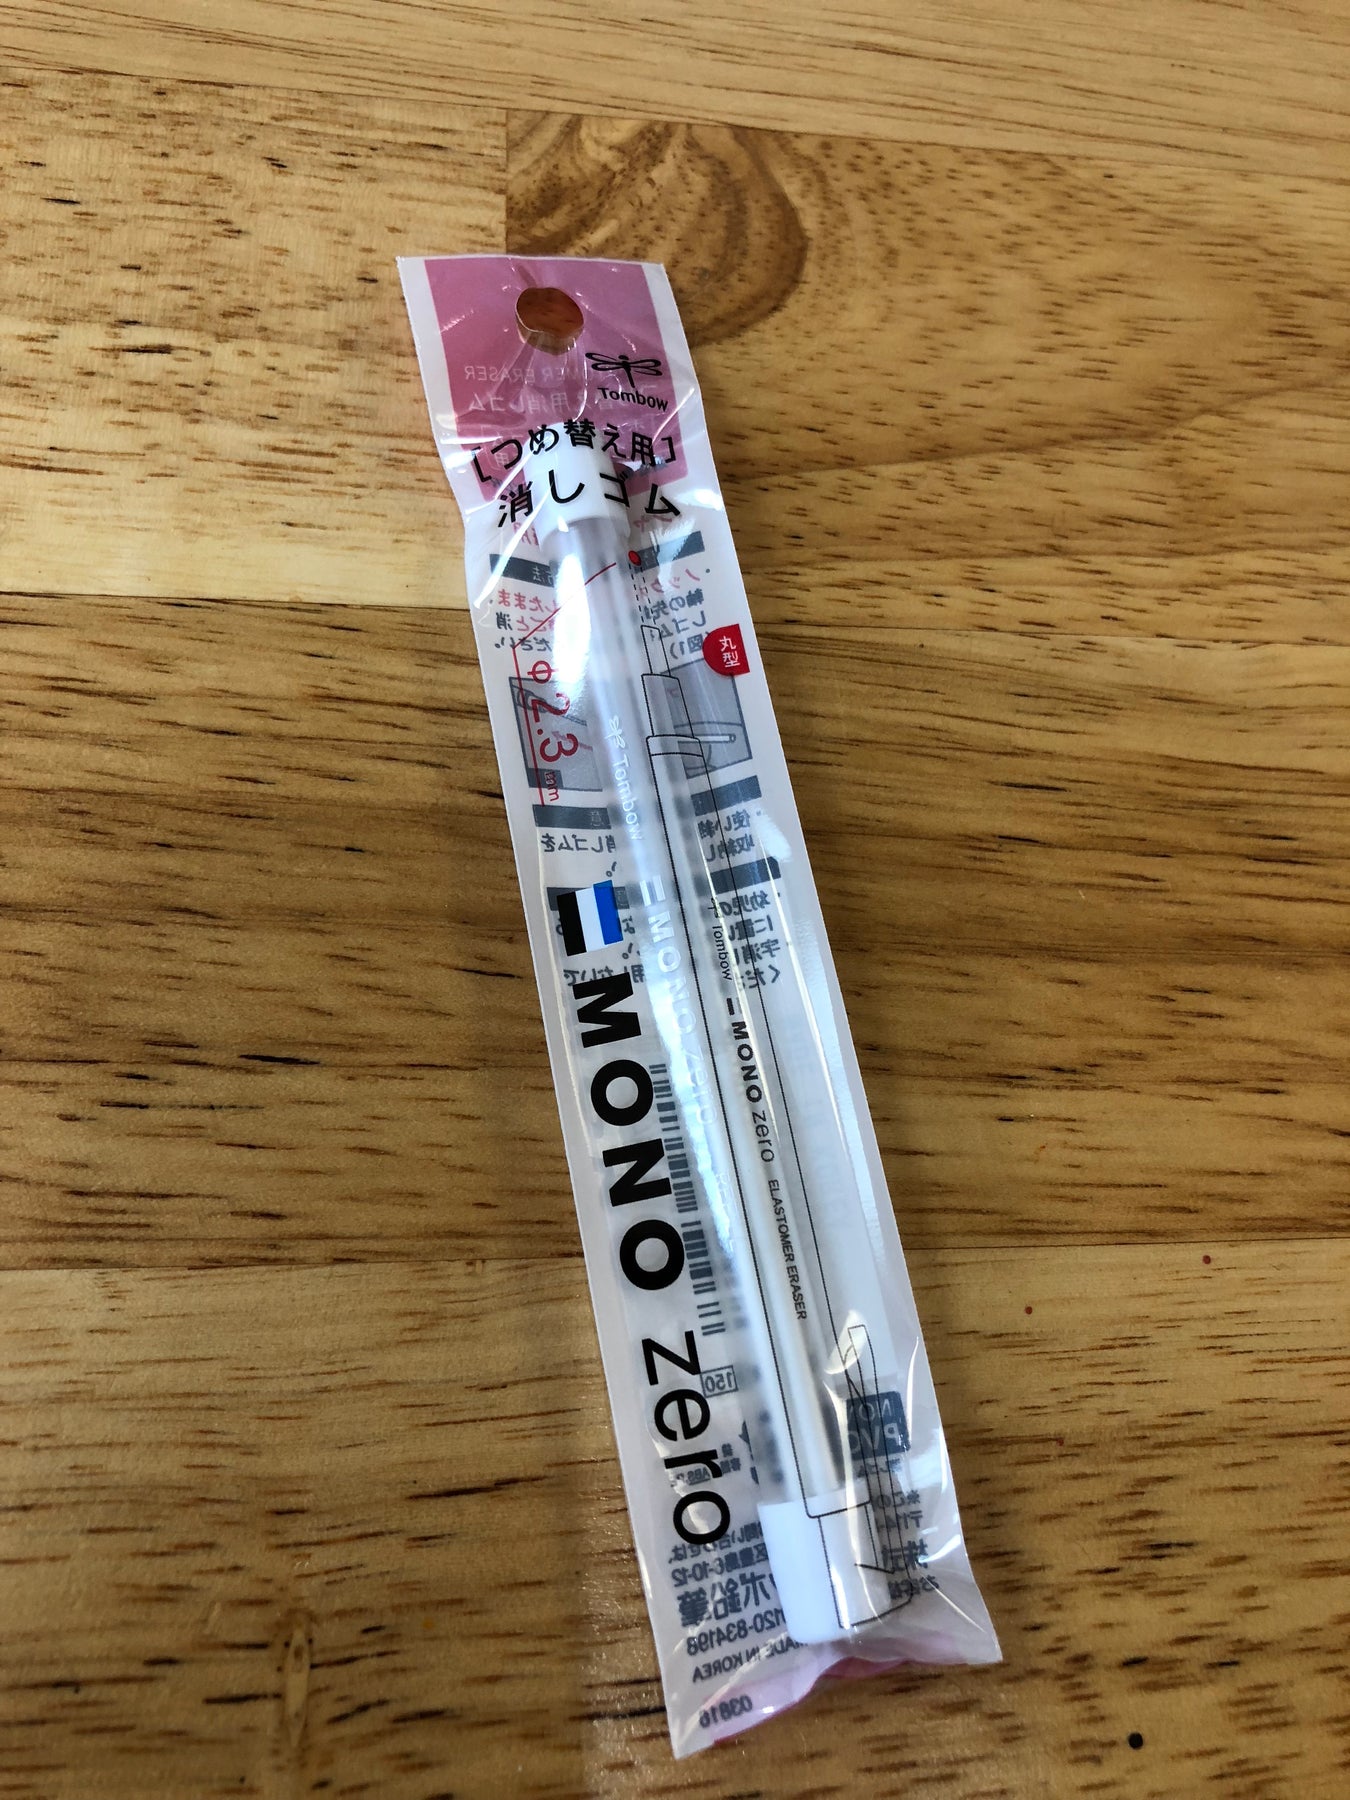 Tombow Mono Zero Eraser, Rectangle 